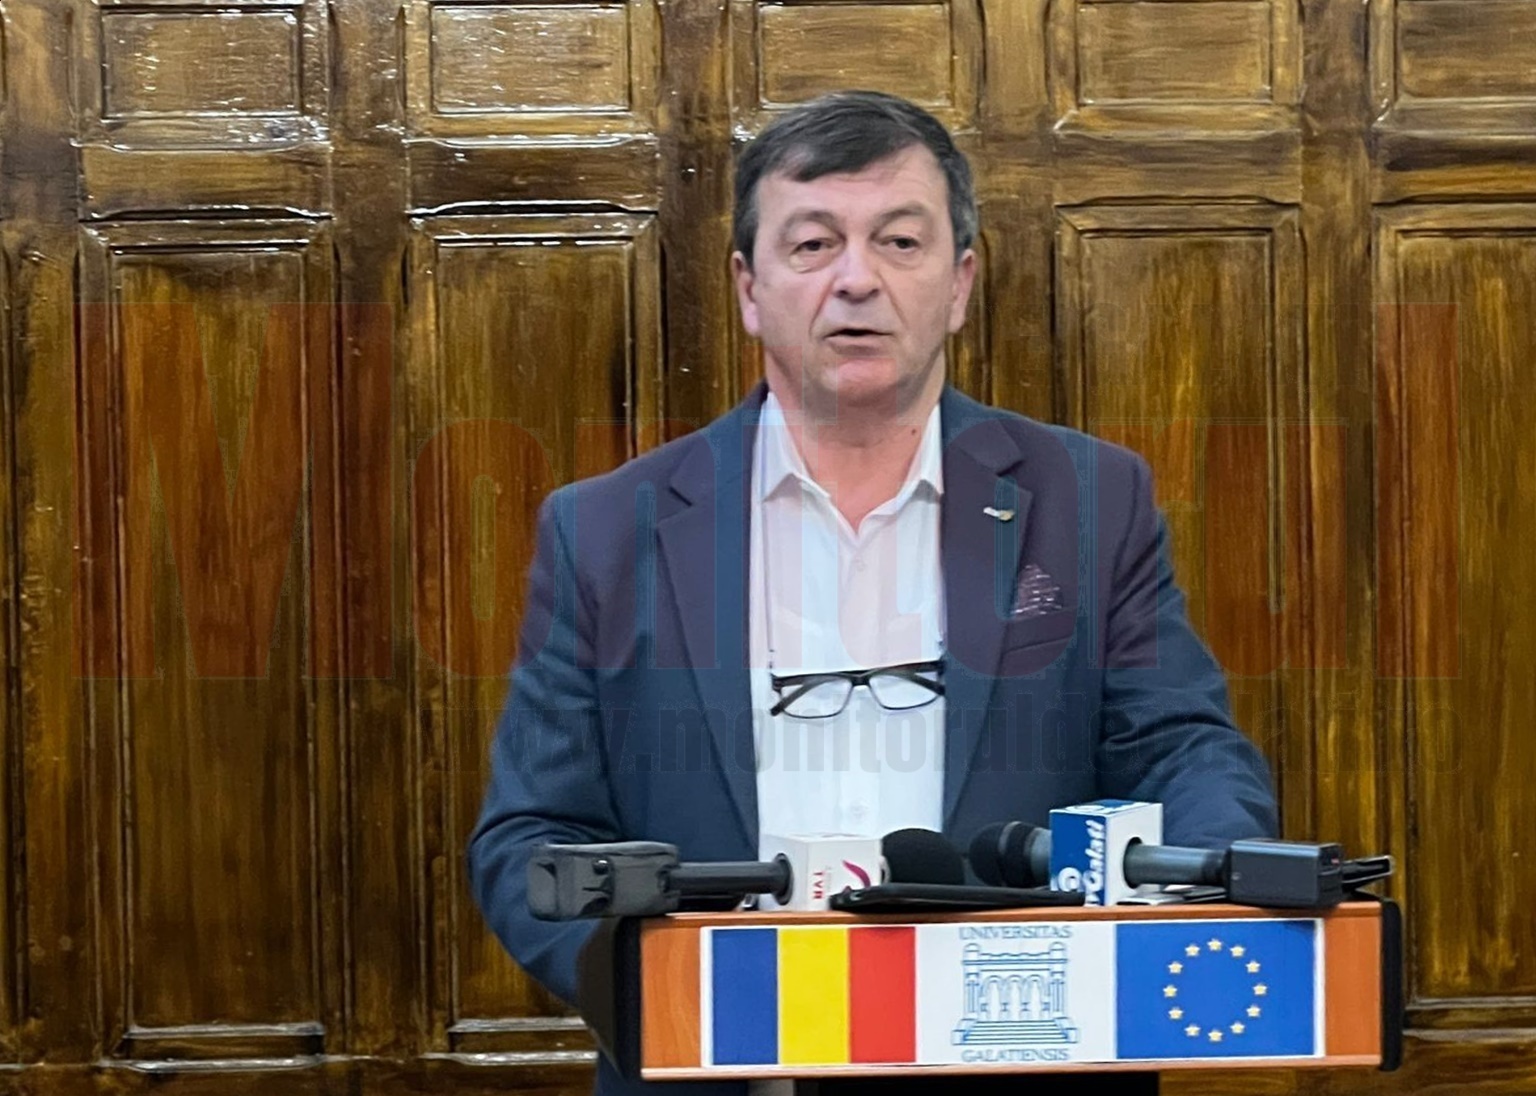 Rectorul UDJ Galaţi acuză ministrul Educaţiei de ilegalităţi şi minciună şi îi cere demisia